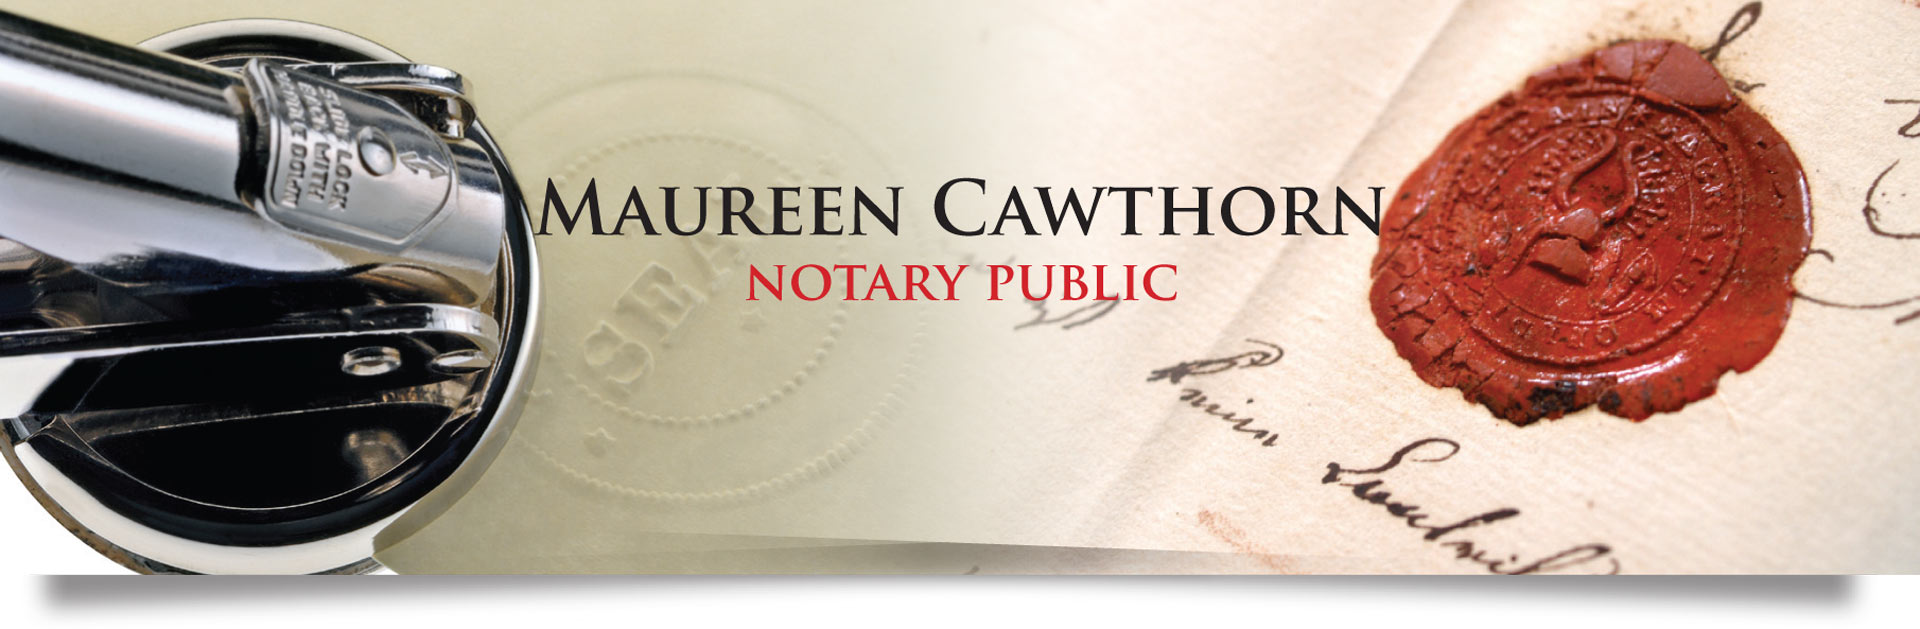 notary public bradford